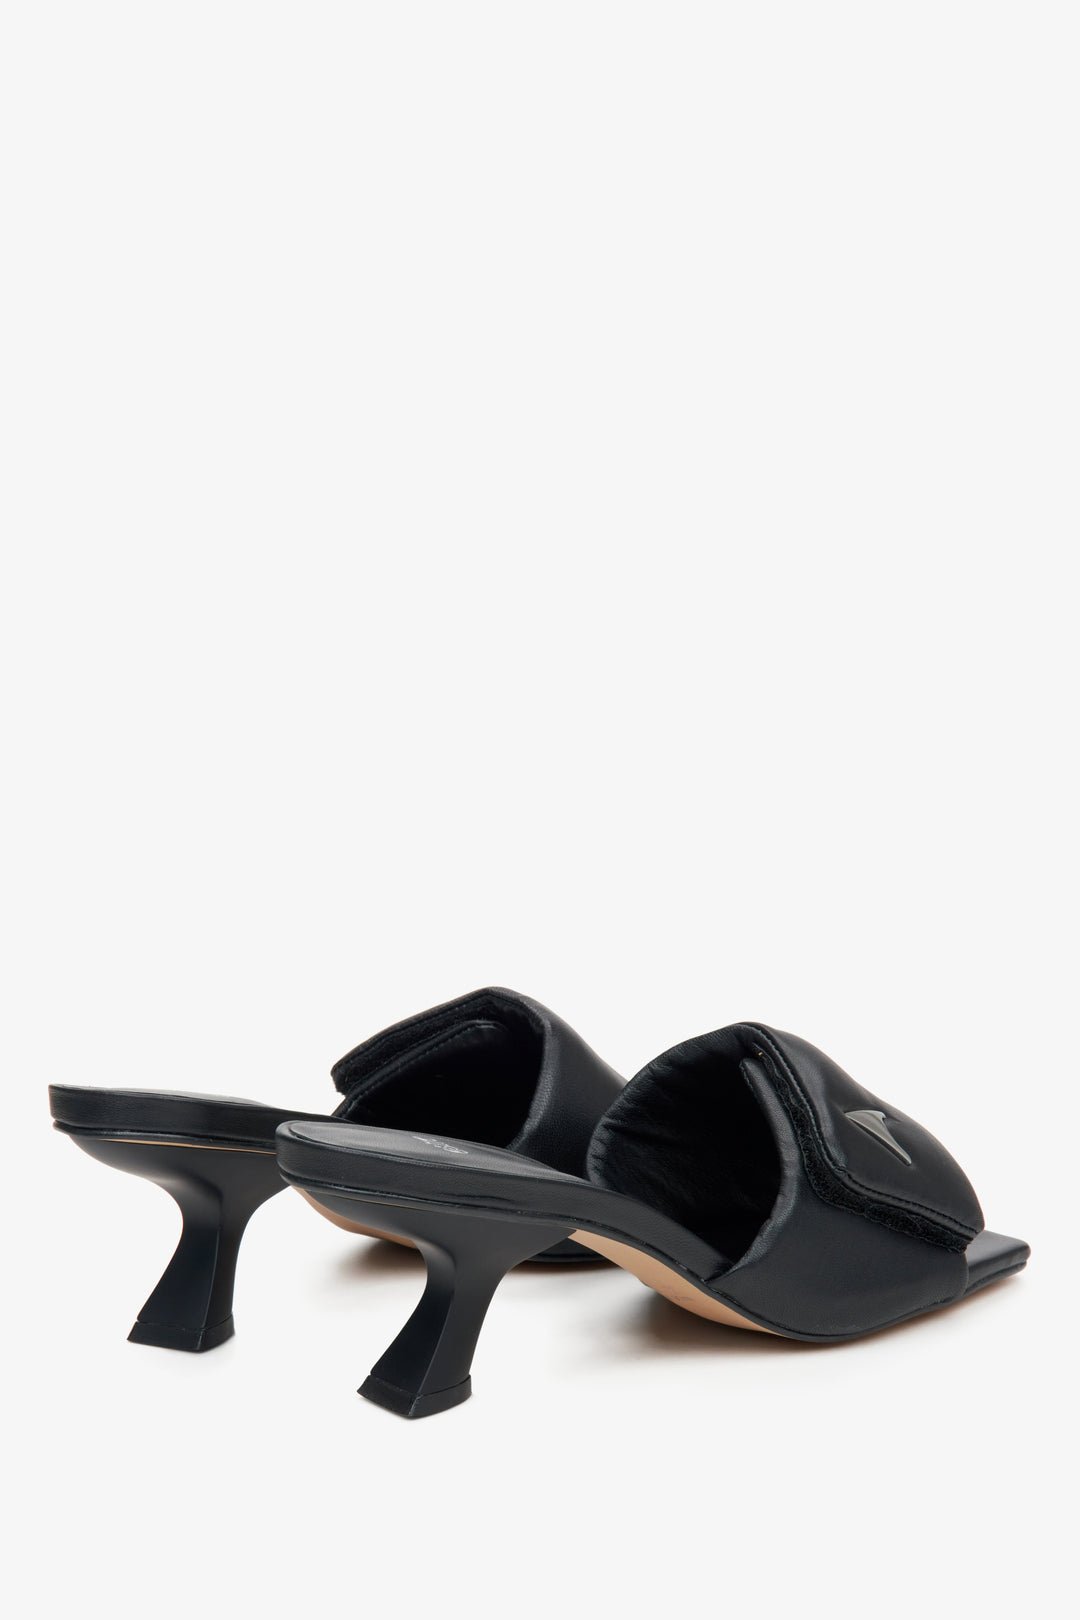 Damskie skórzane klapki w kolorze czarnym  - zbliżenie na zapiętek i linię boczną butów.